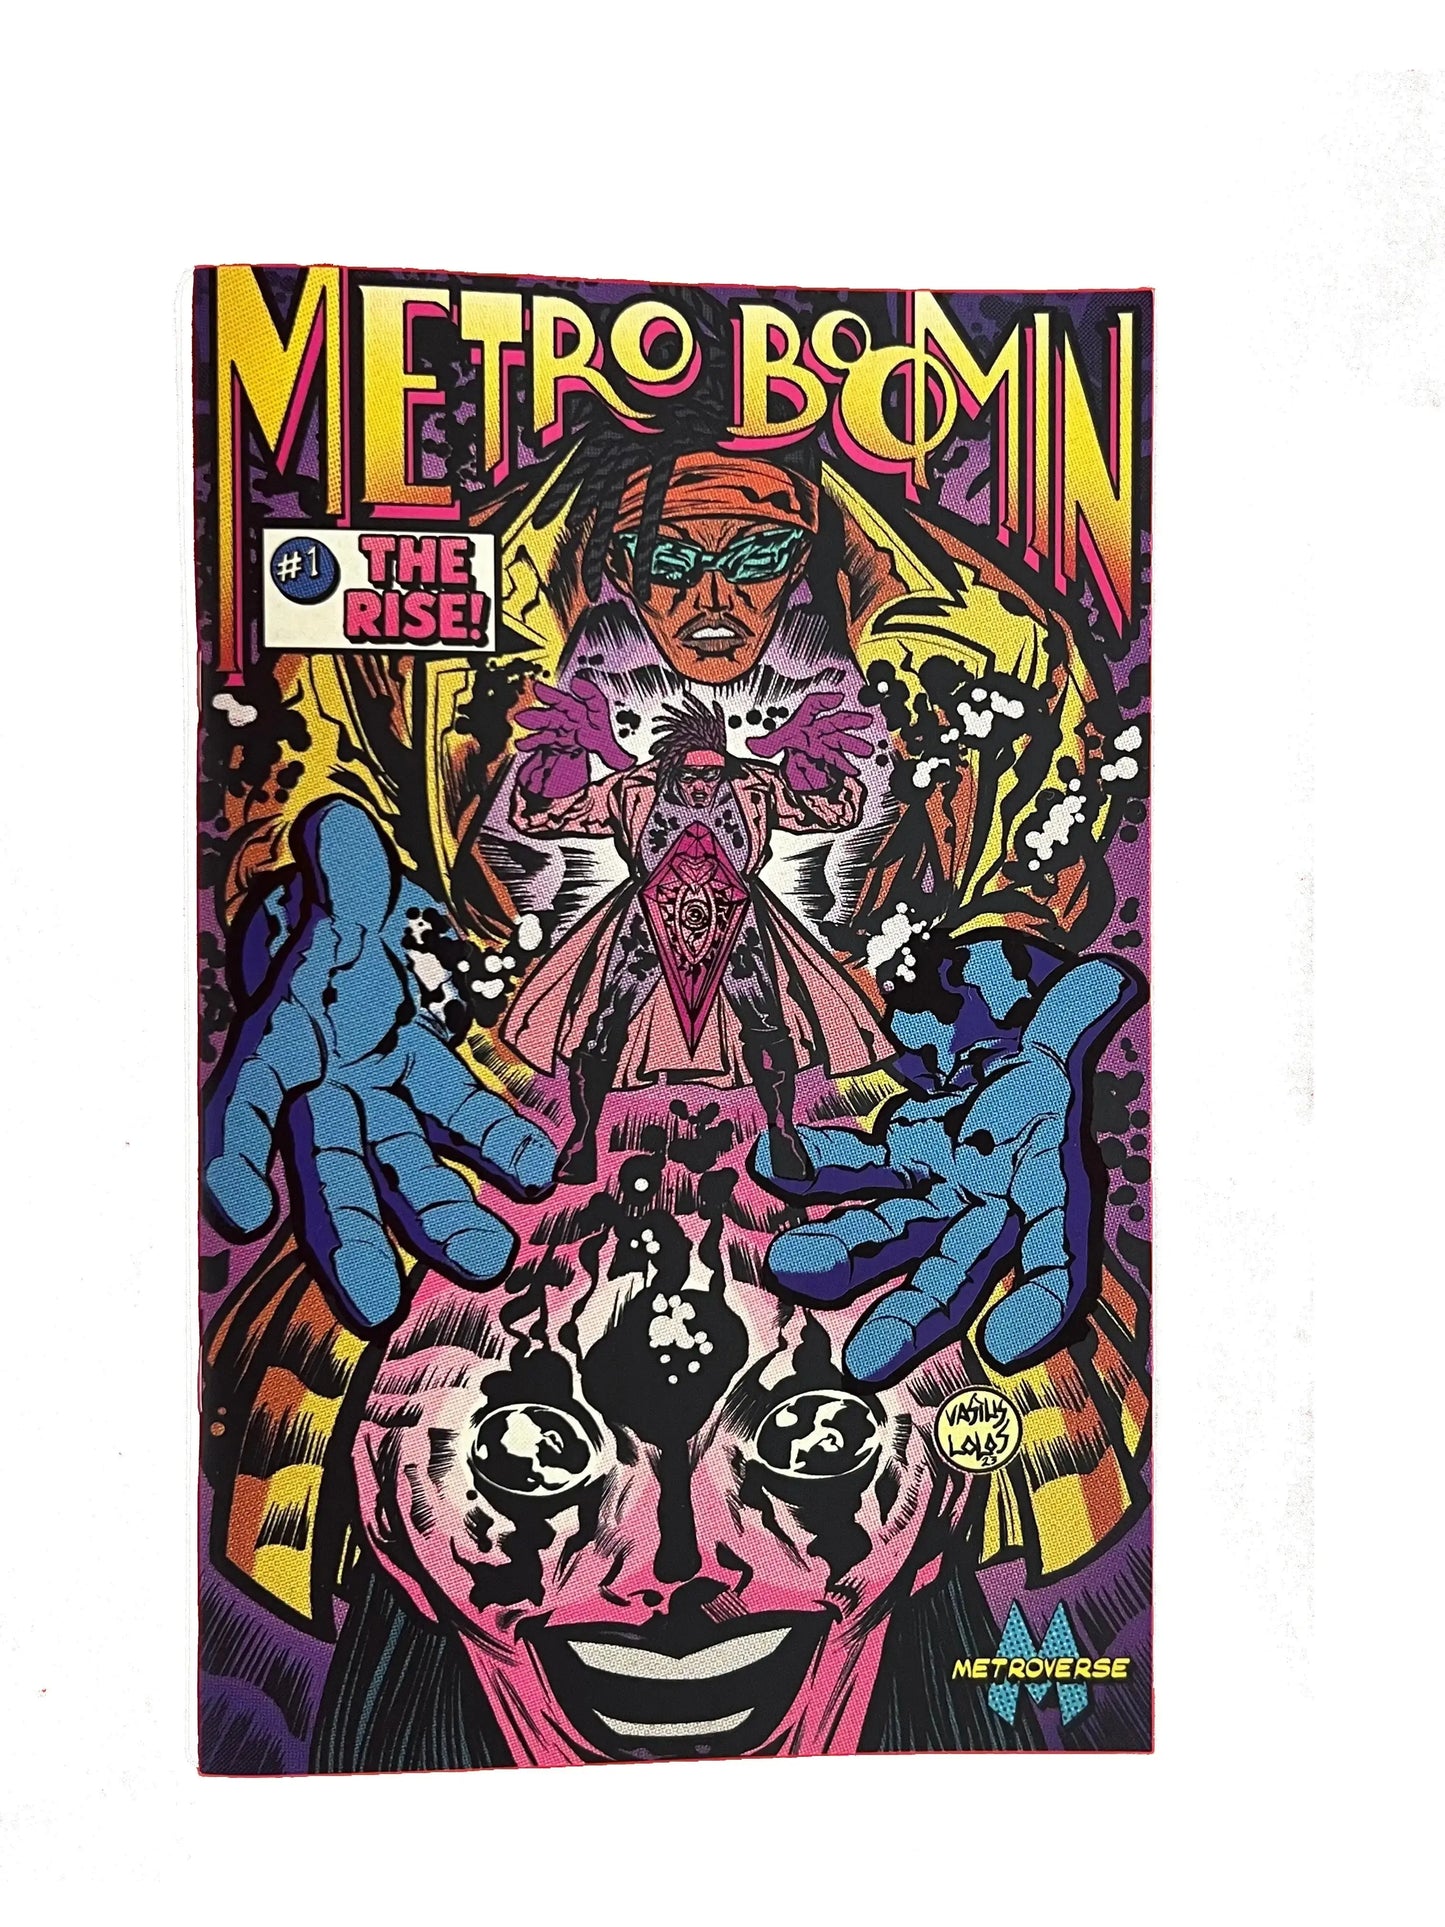 Metro Boomin The Rise #1